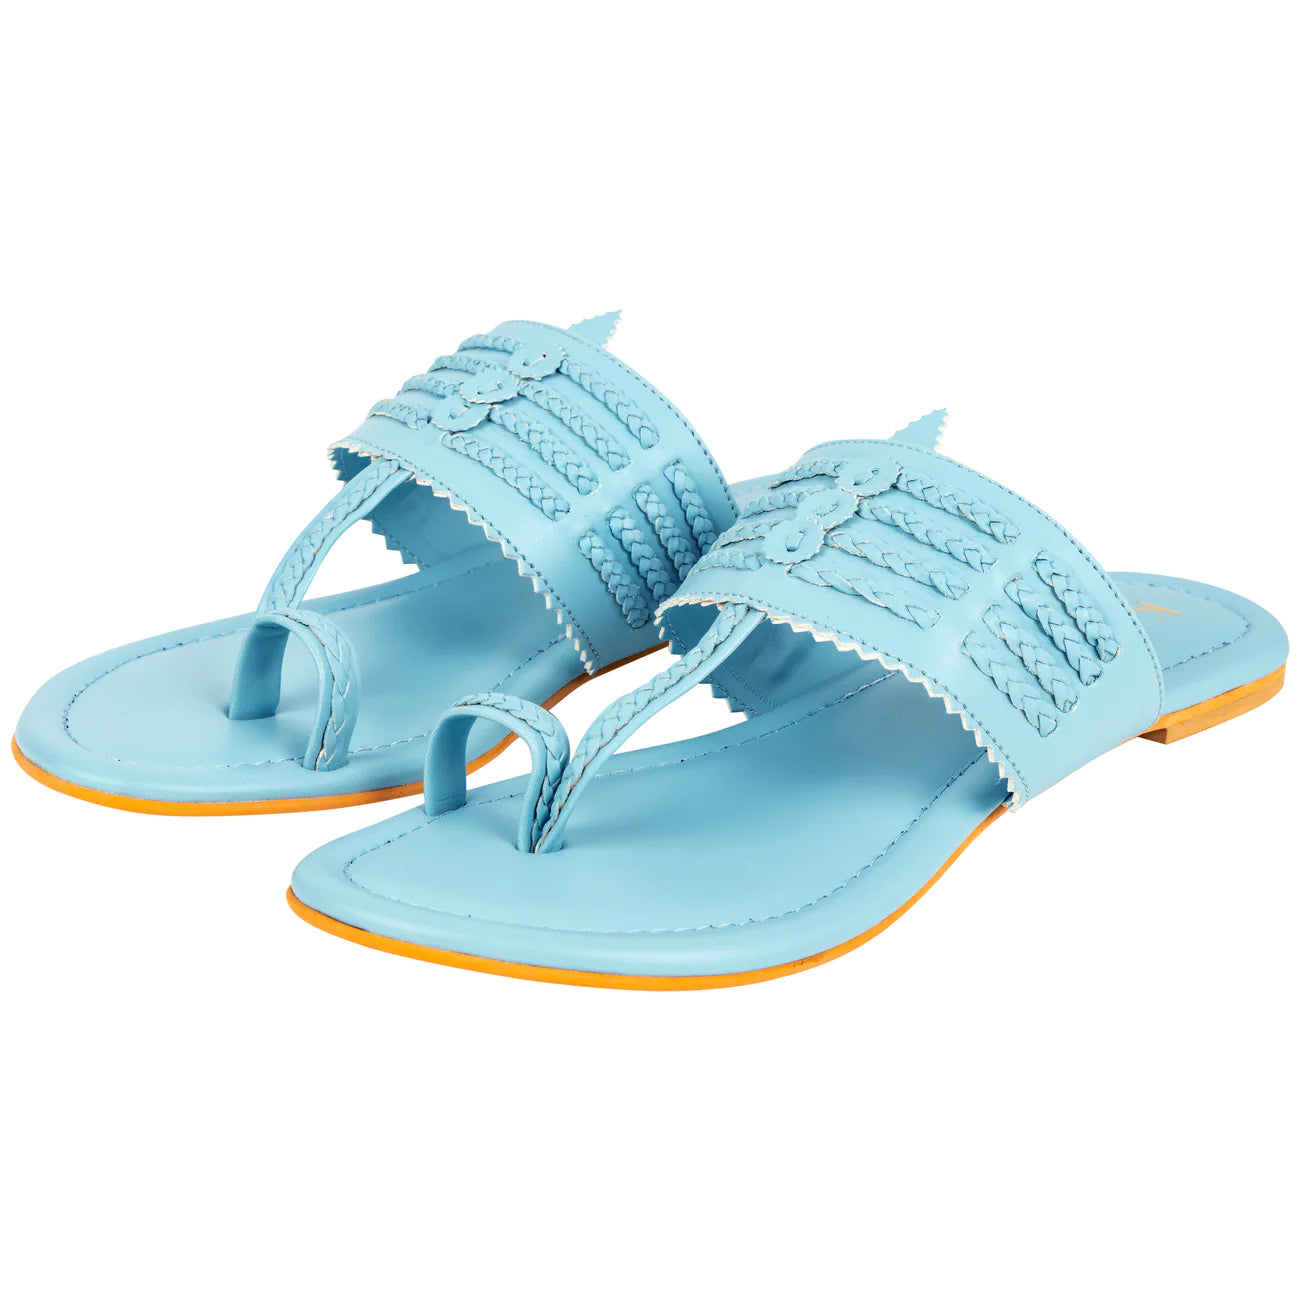 blue flat sandals for women